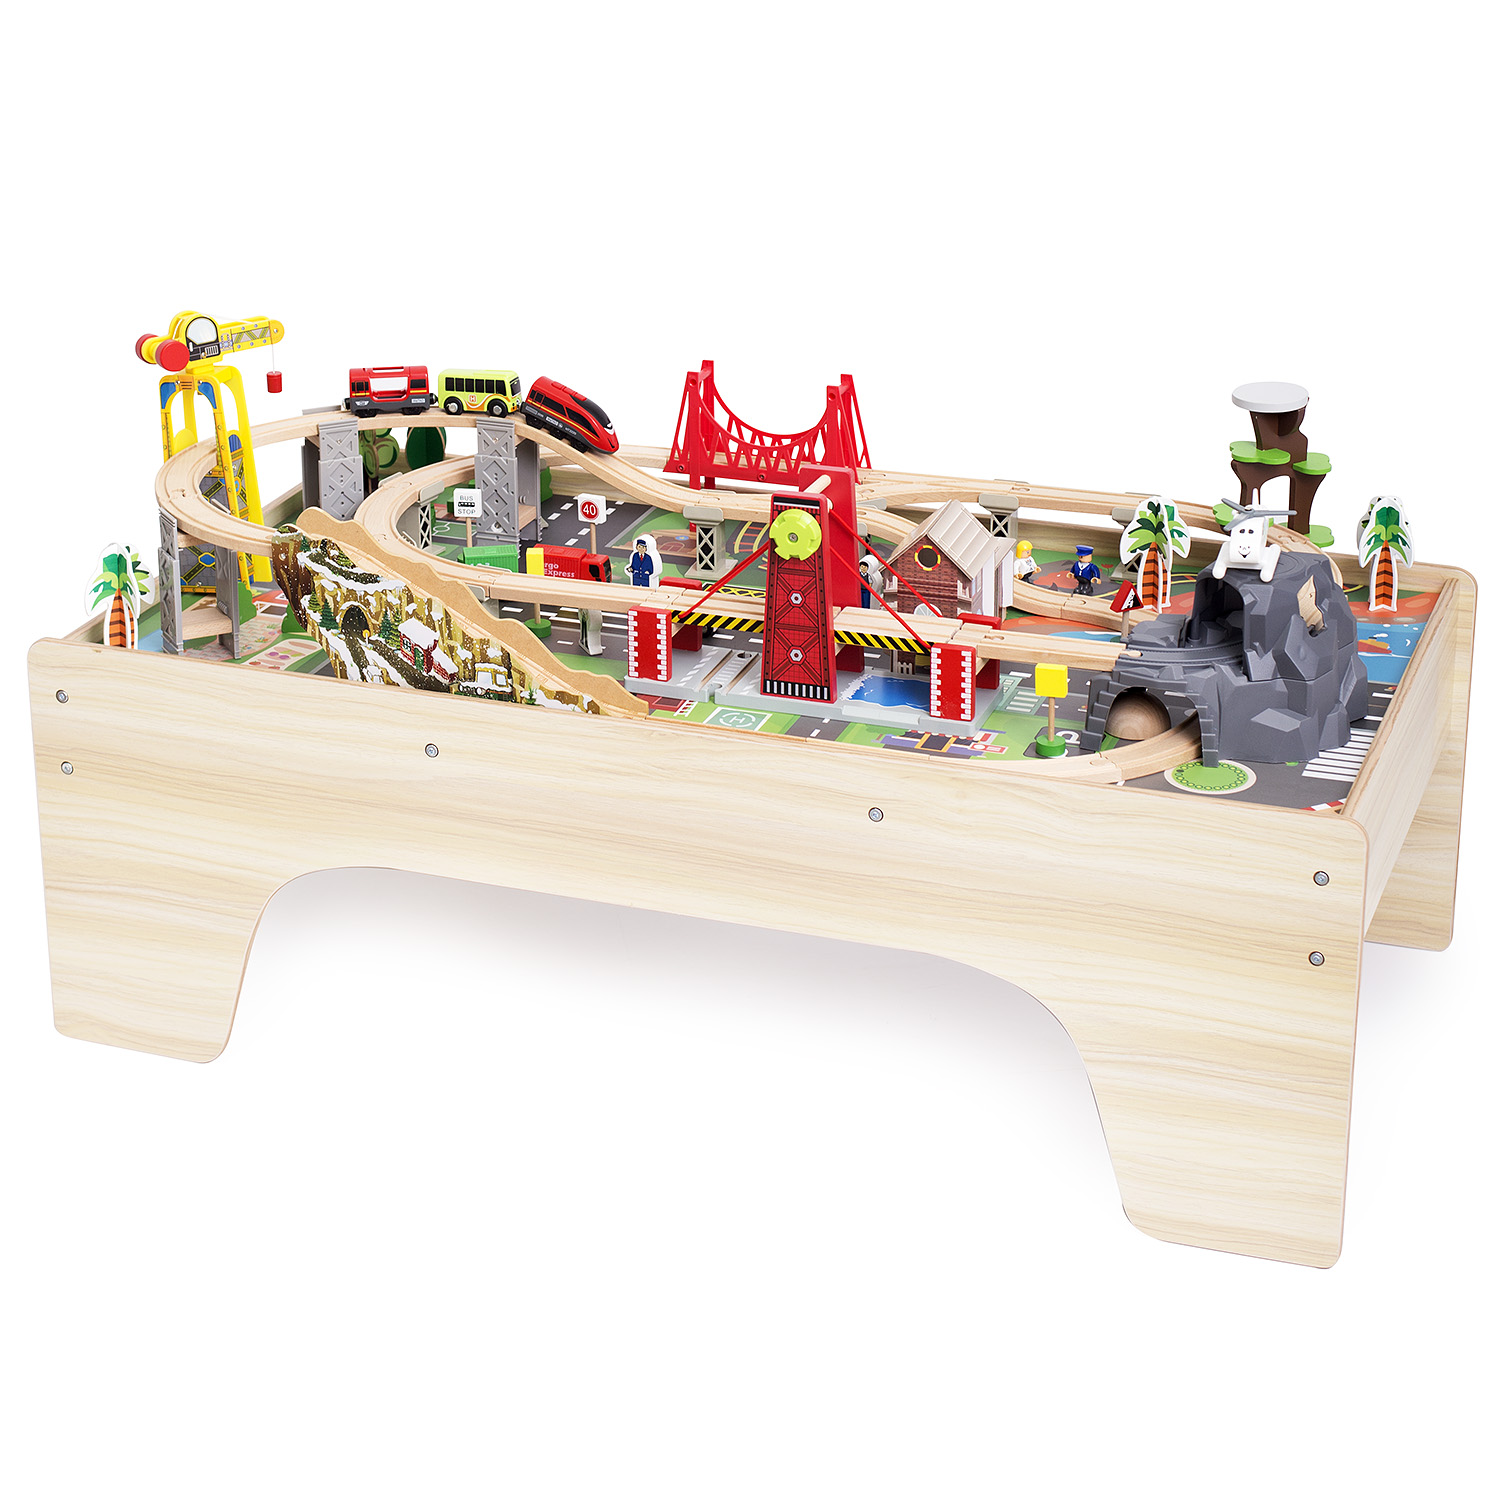 Игровой набор База Игрушек деревянная железная дорога со столом 100 дет деревянная железная дорога kidkraft горный водопад со столом 1 шт